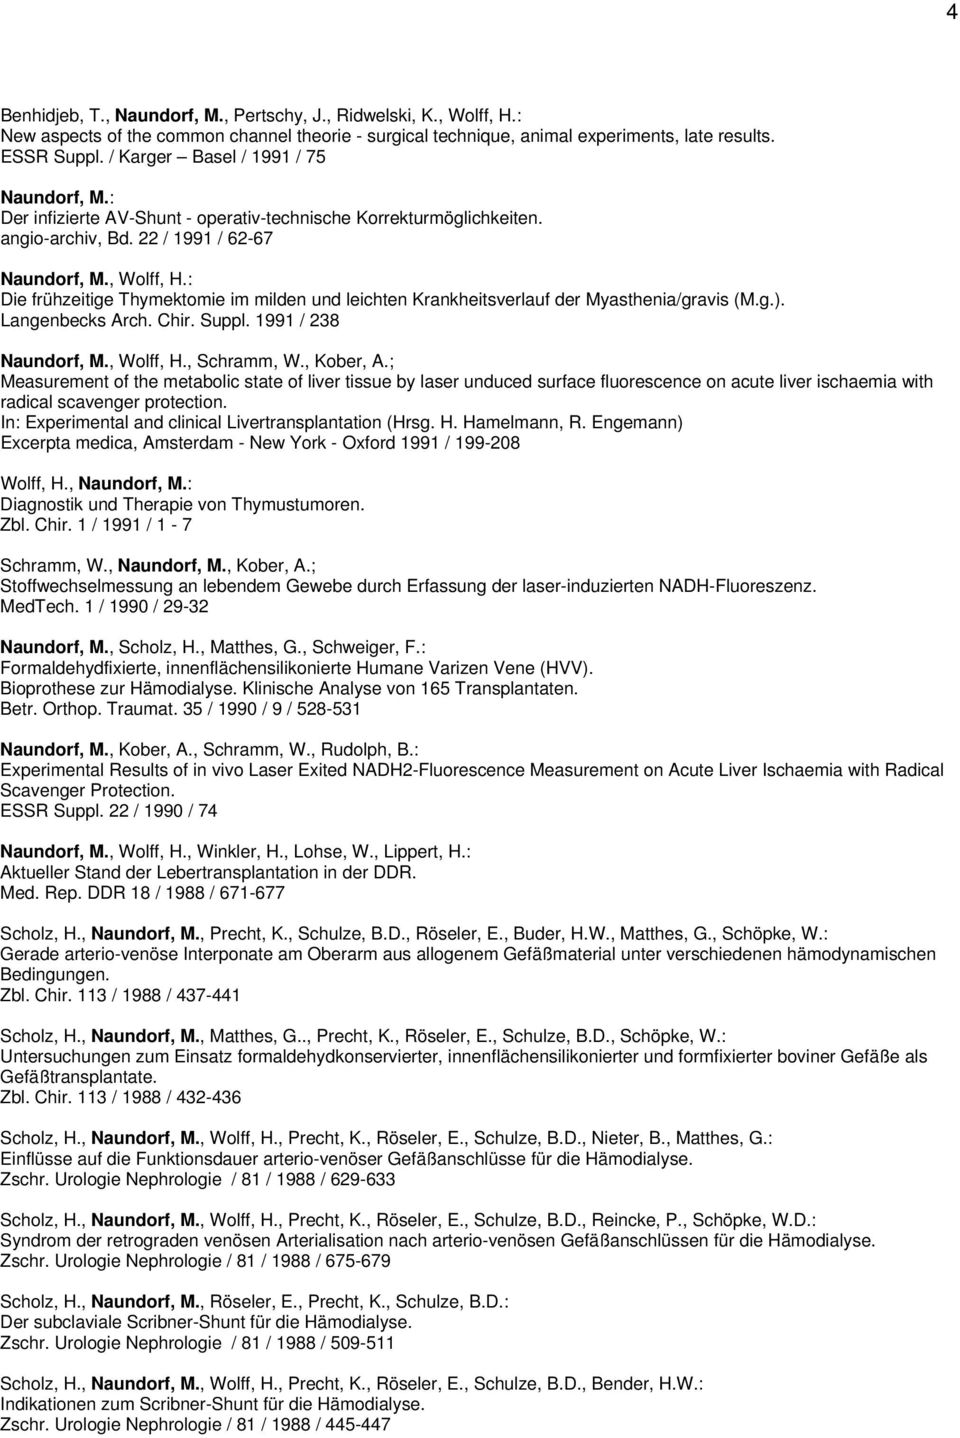 : Die frühzeitige Thymektomie im milden und leichten Krankheitsverlauf der Myasthenia/gravis (M.g.). Langenbecks Arch. Chir. Suppl. 1991 / 238, Wolff, H., Schramm, W., Kober, A.